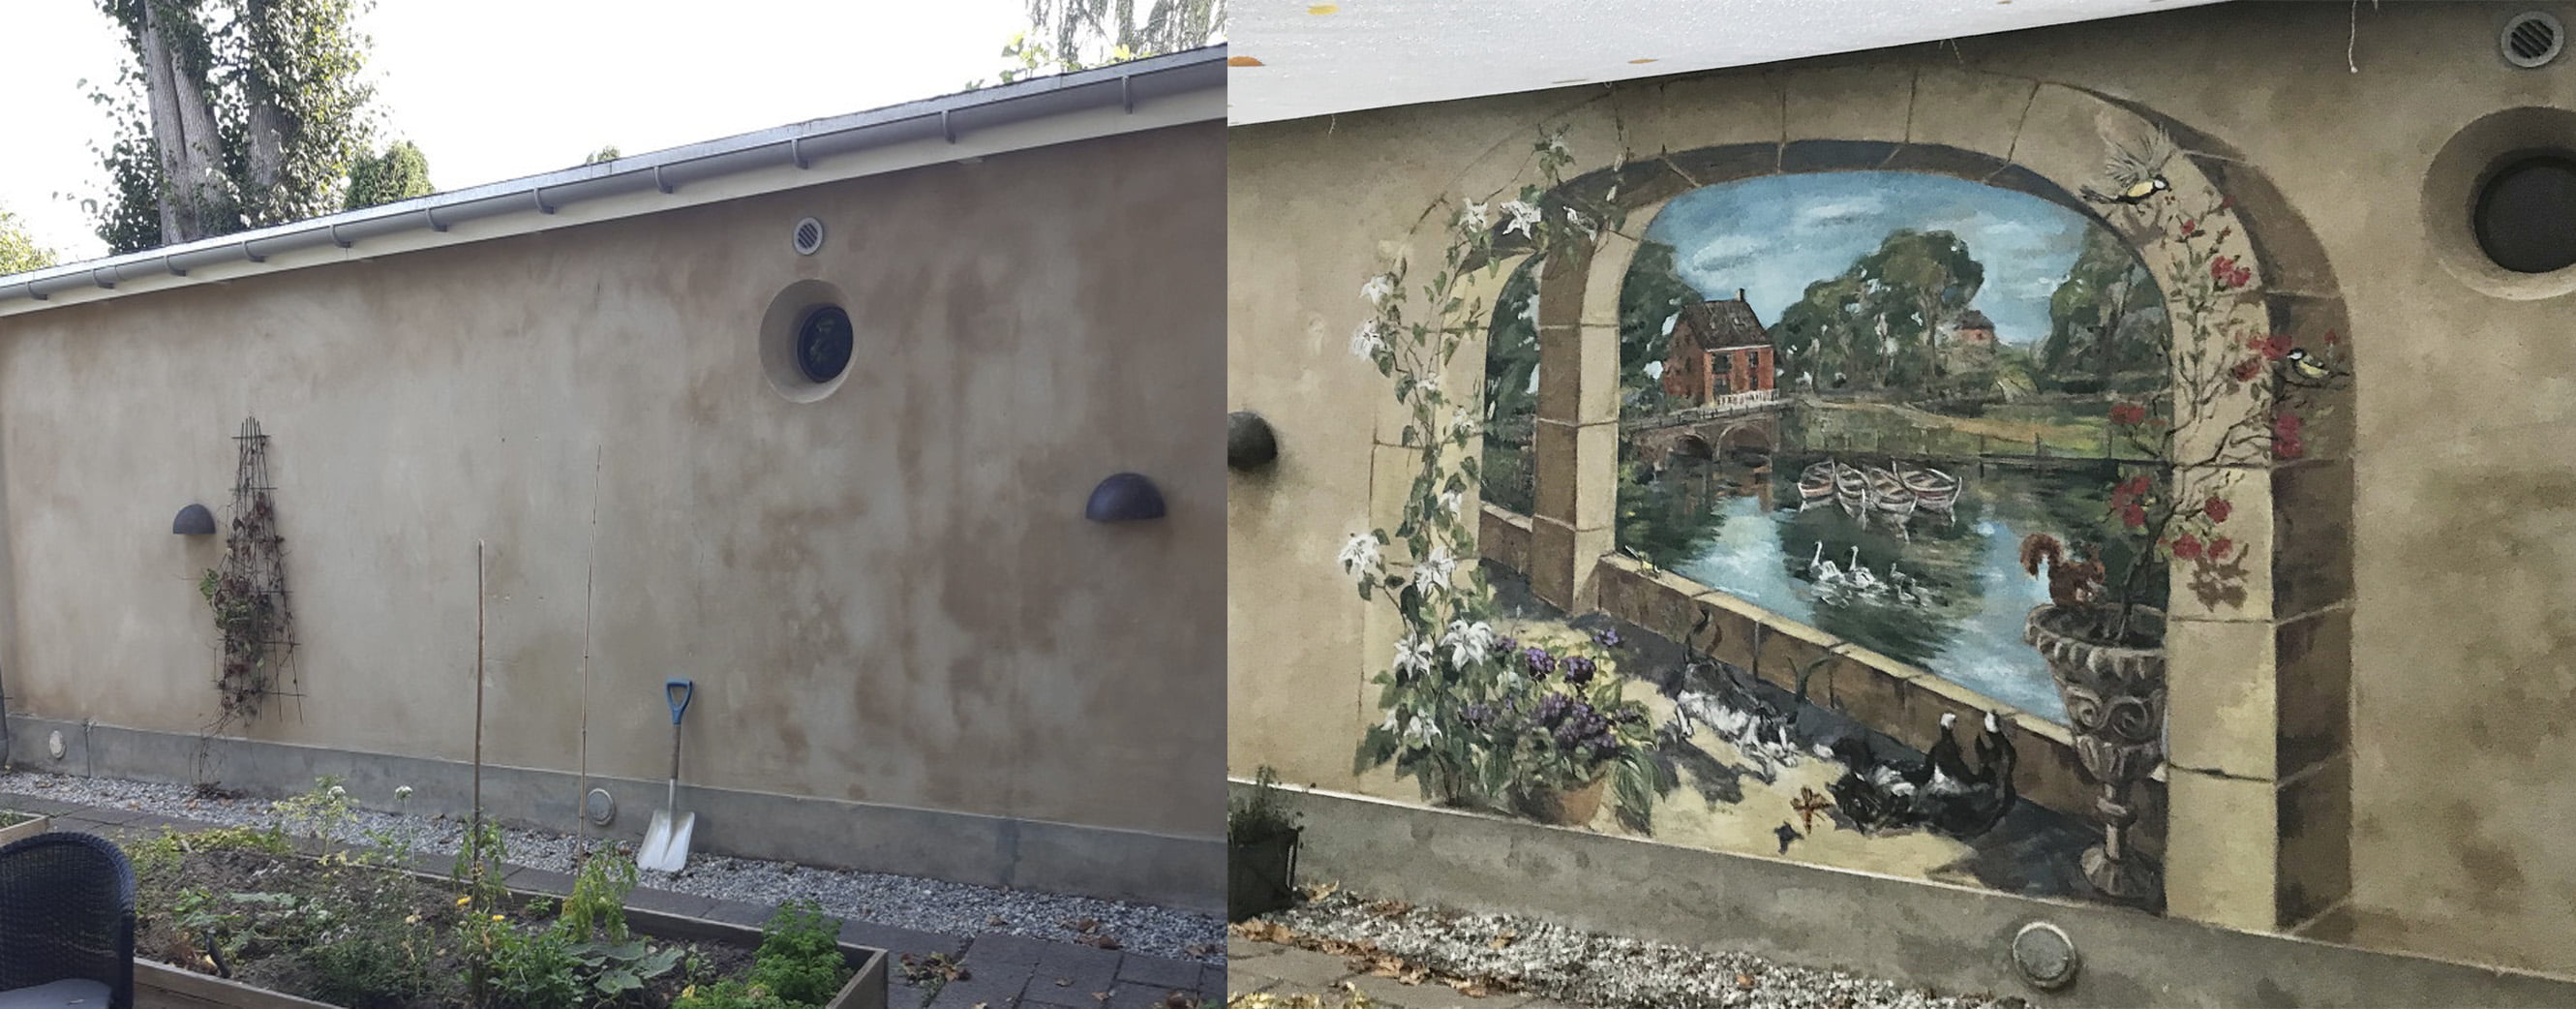 før og efter vægmaleri af Xenia Michaelsen på udendørs mur ved Strandvejen